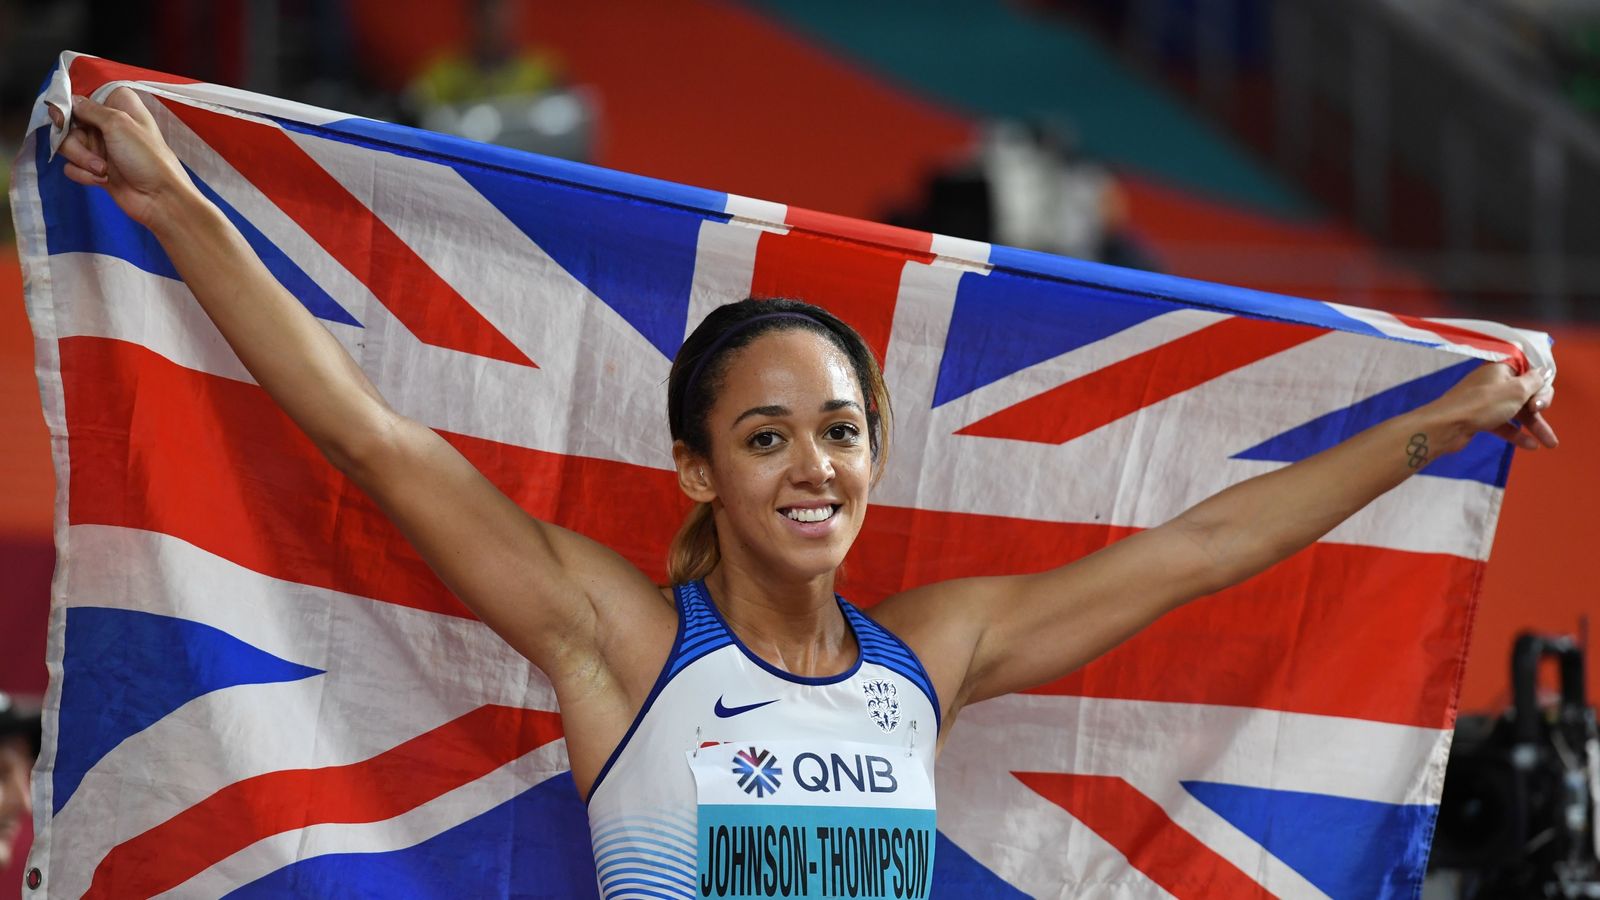 Katarina Johnson-Thompson focused on Olympic year ahead.